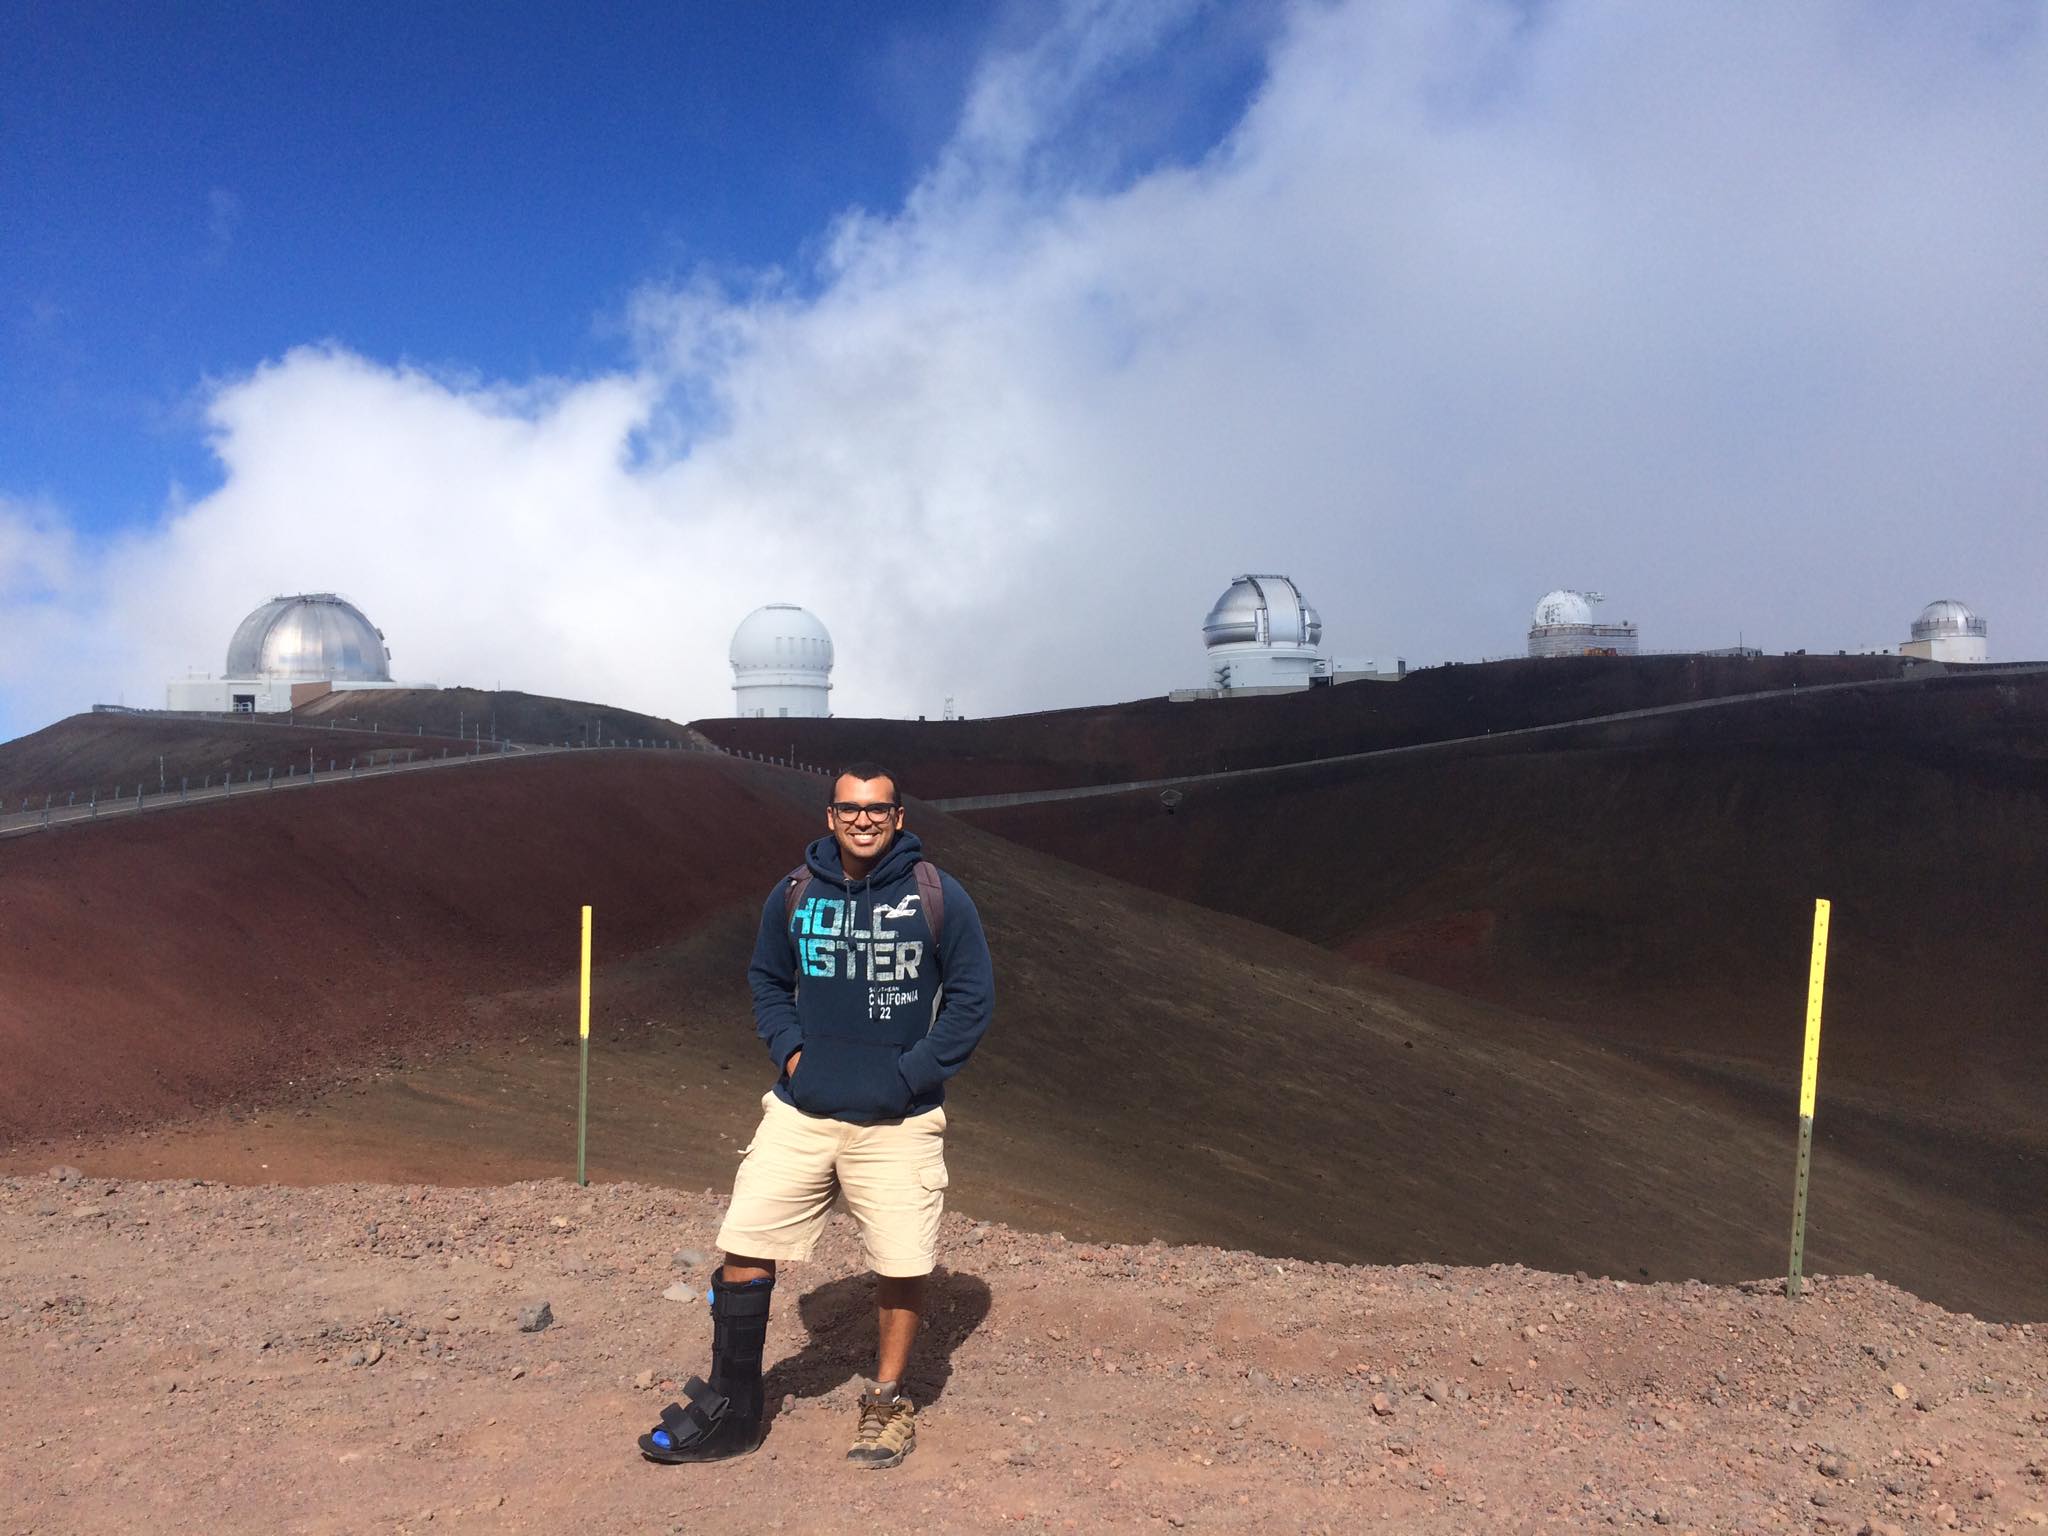 mauna-kea-summit-telescopes-Hawaii-achilles-tendon-injury